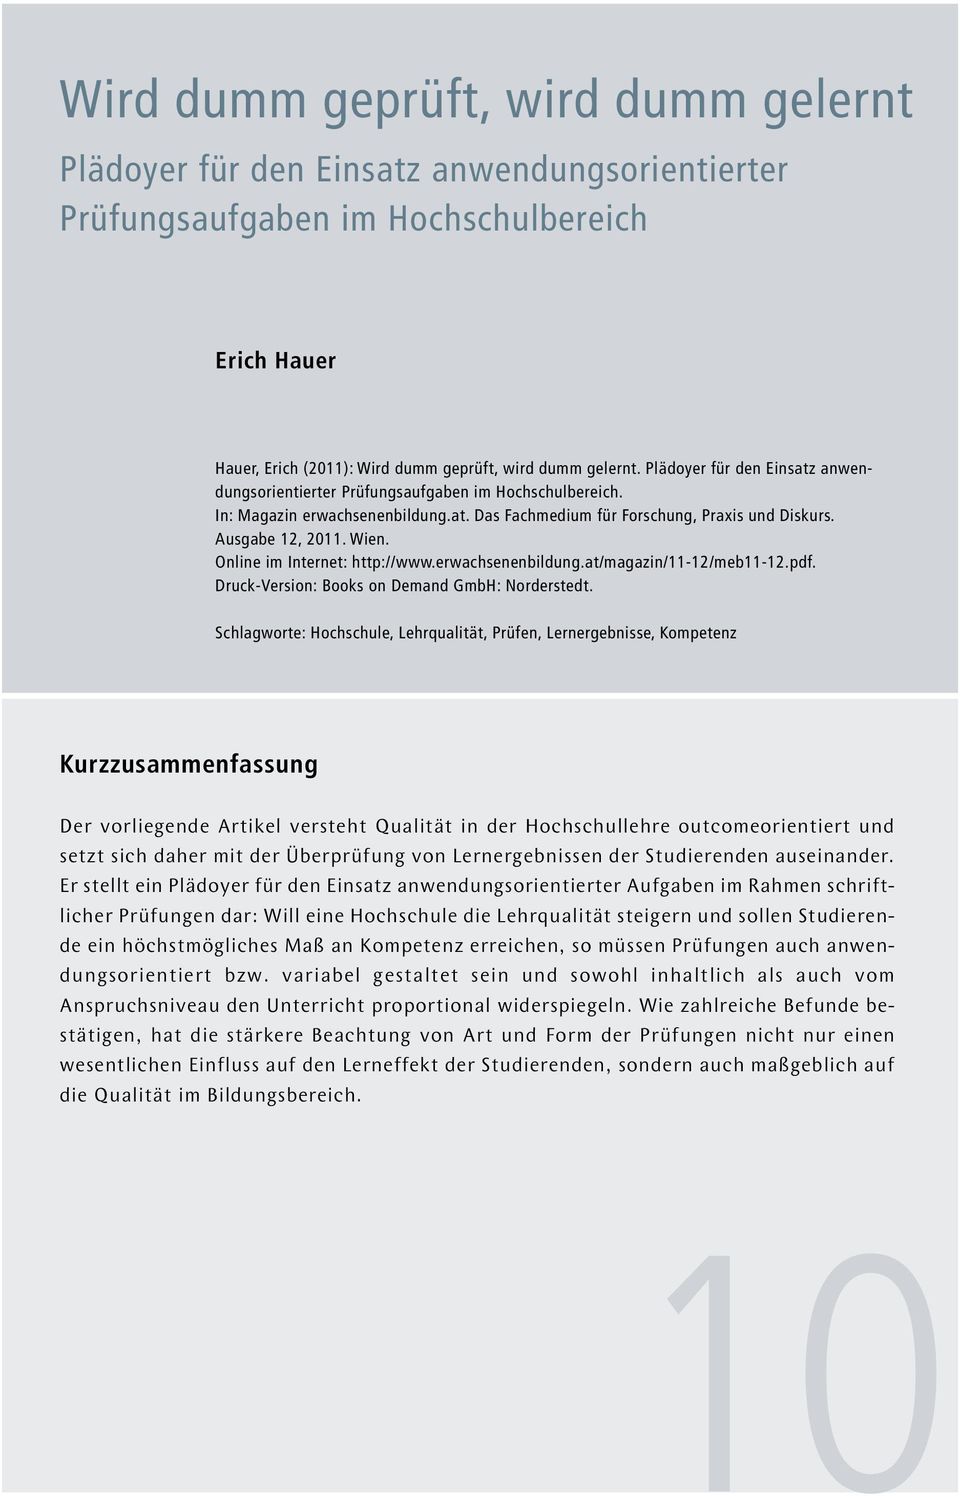 Online im Internet: http://www.erwachsenenbildung.at/magazin/11-12/meb11-12.pdf. Druck-Version: Books on Demand GmbH: Norderstedt.